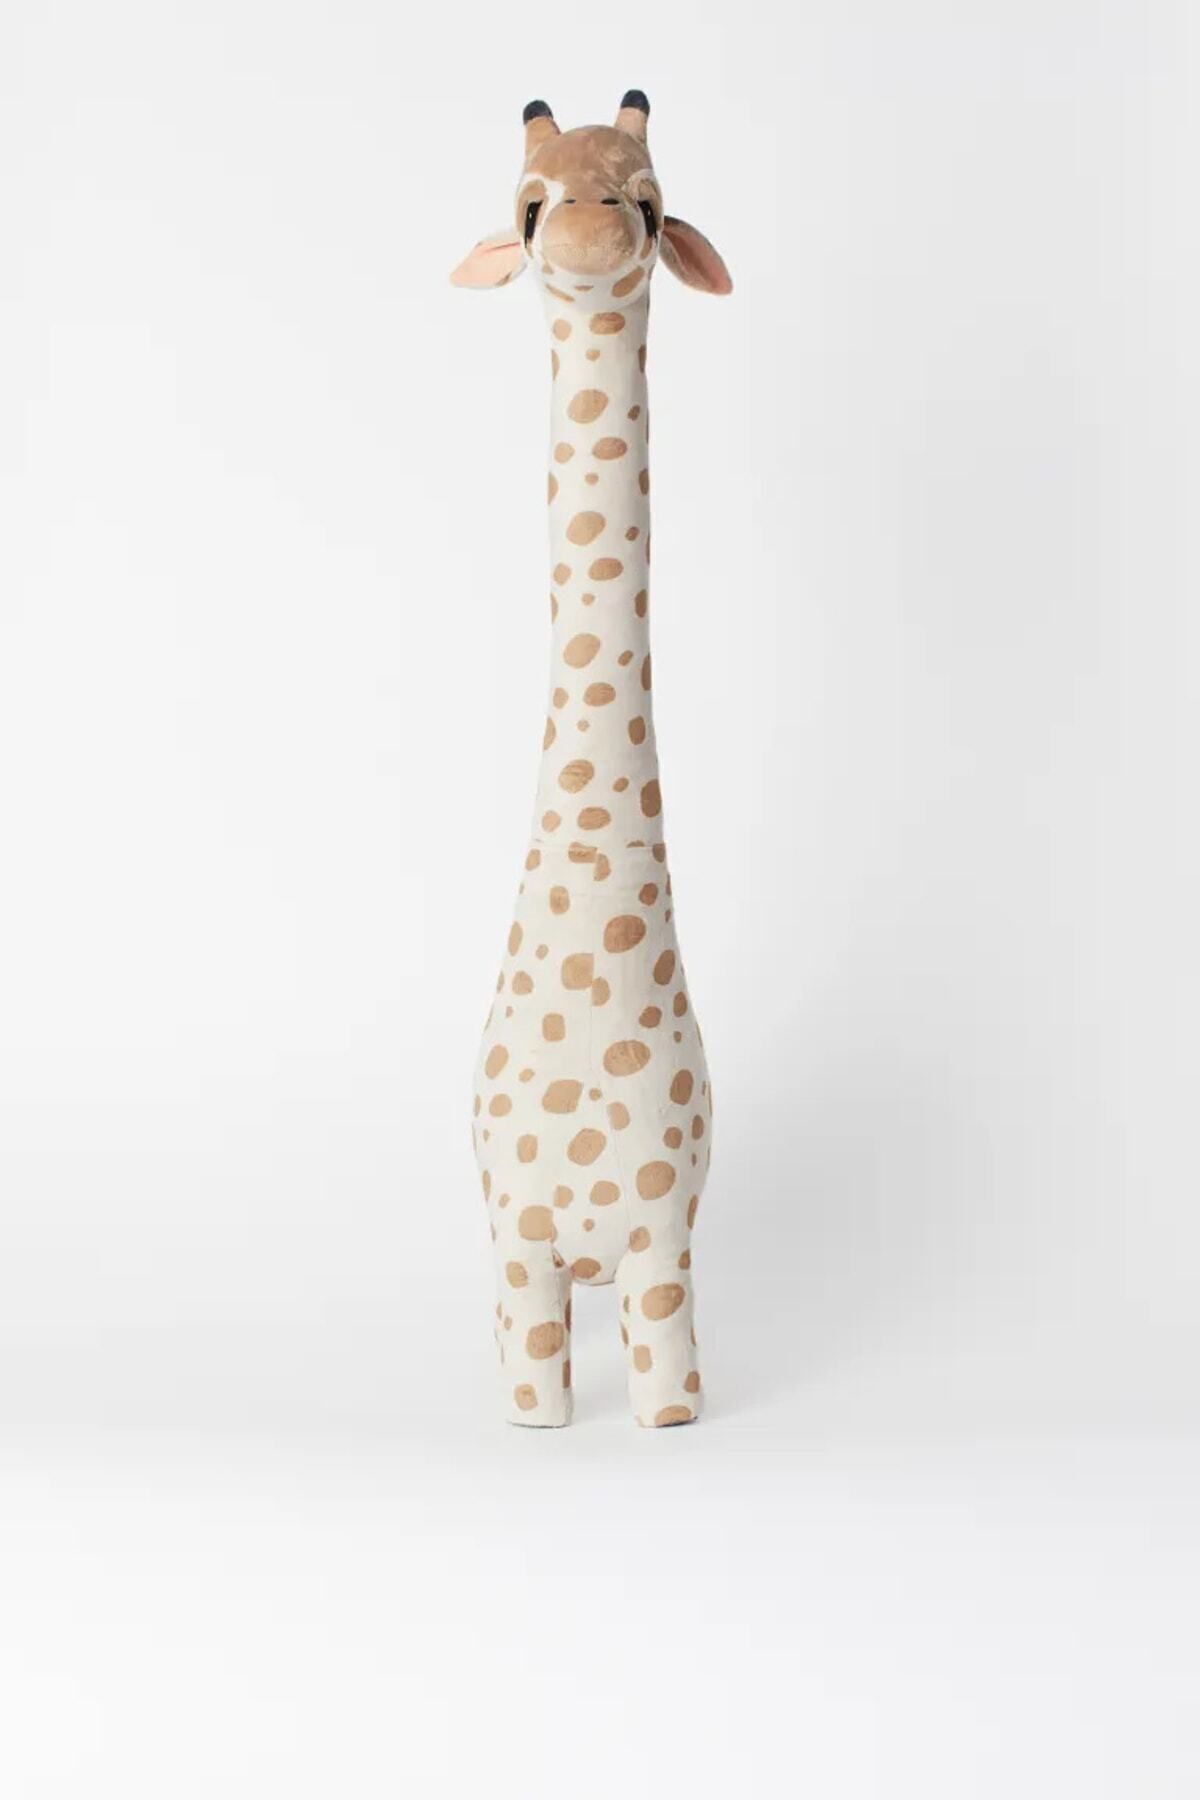 Cartel Oyun Arkadaşım Peluş Zürafa 100 cm